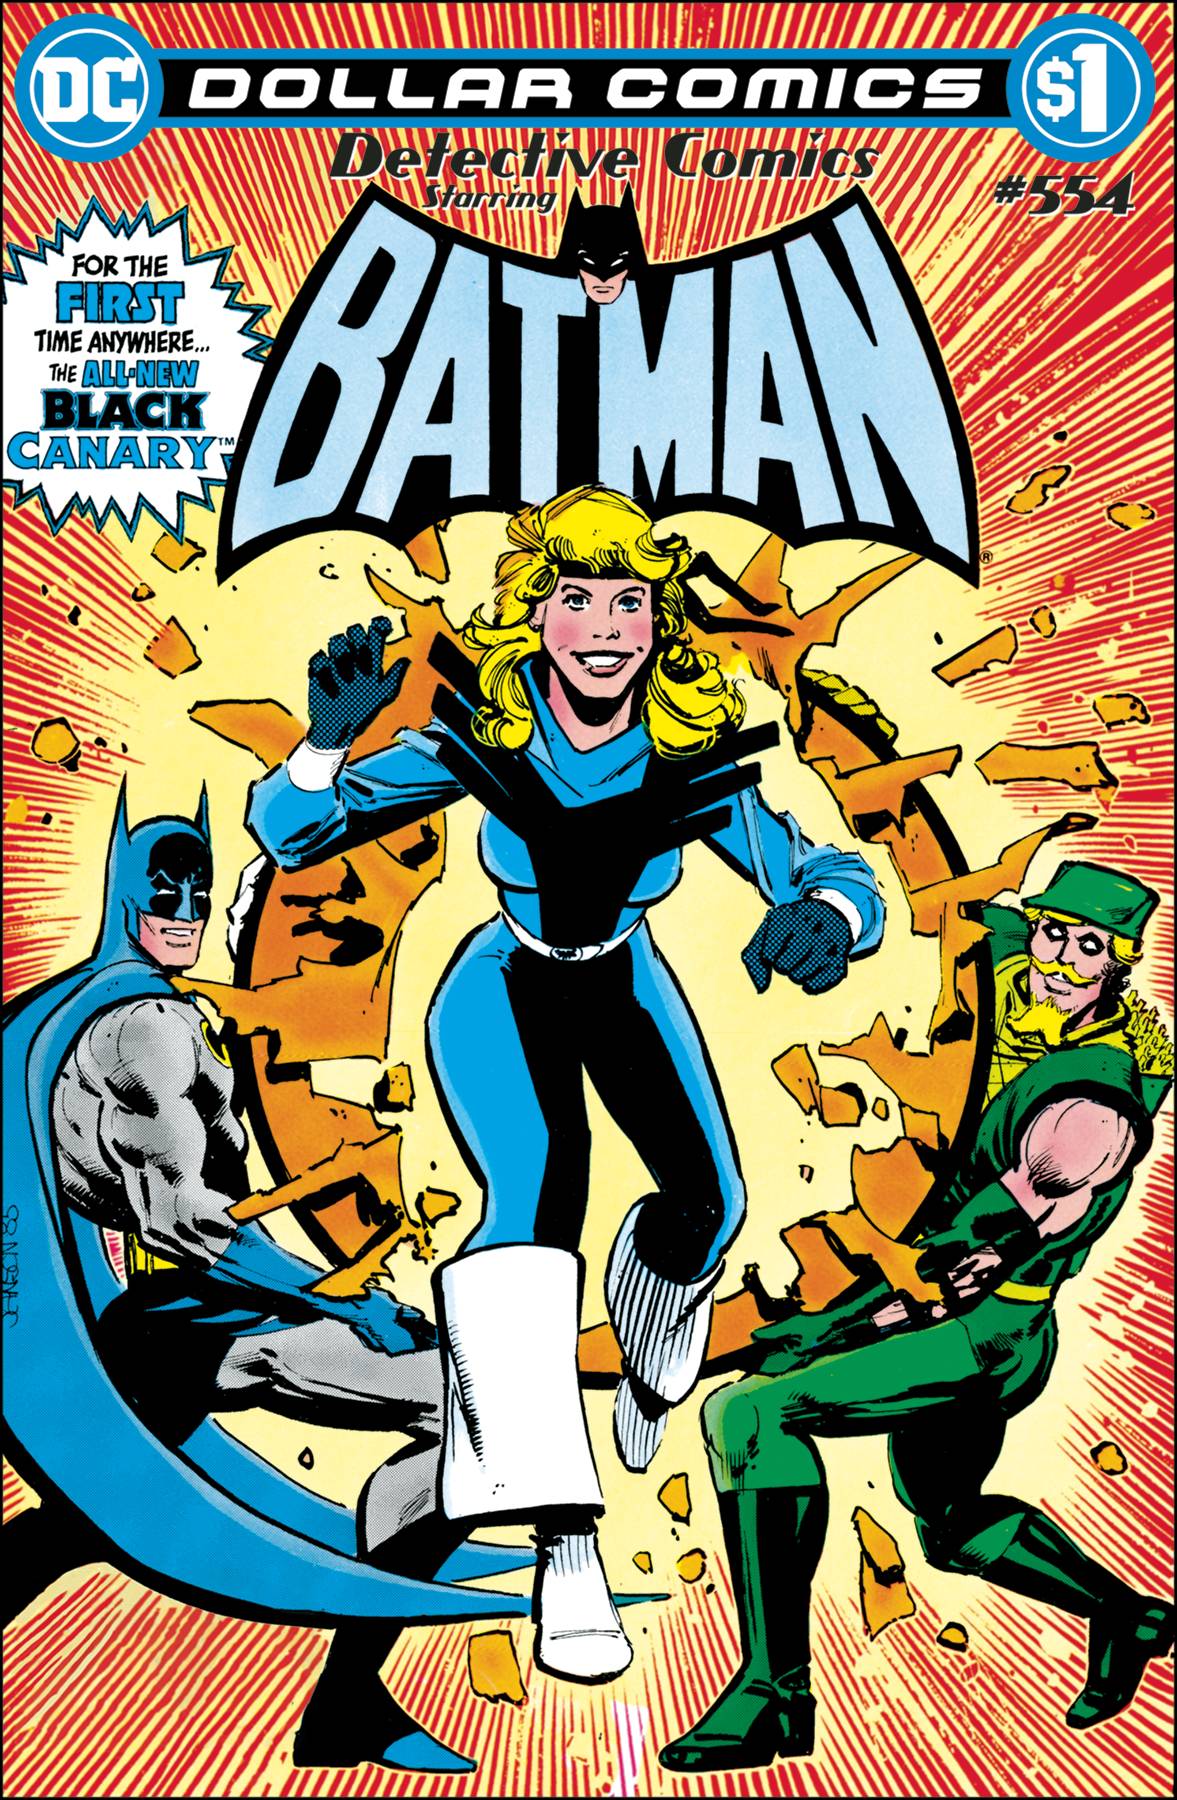 Dollar Comics Detective Comics #554